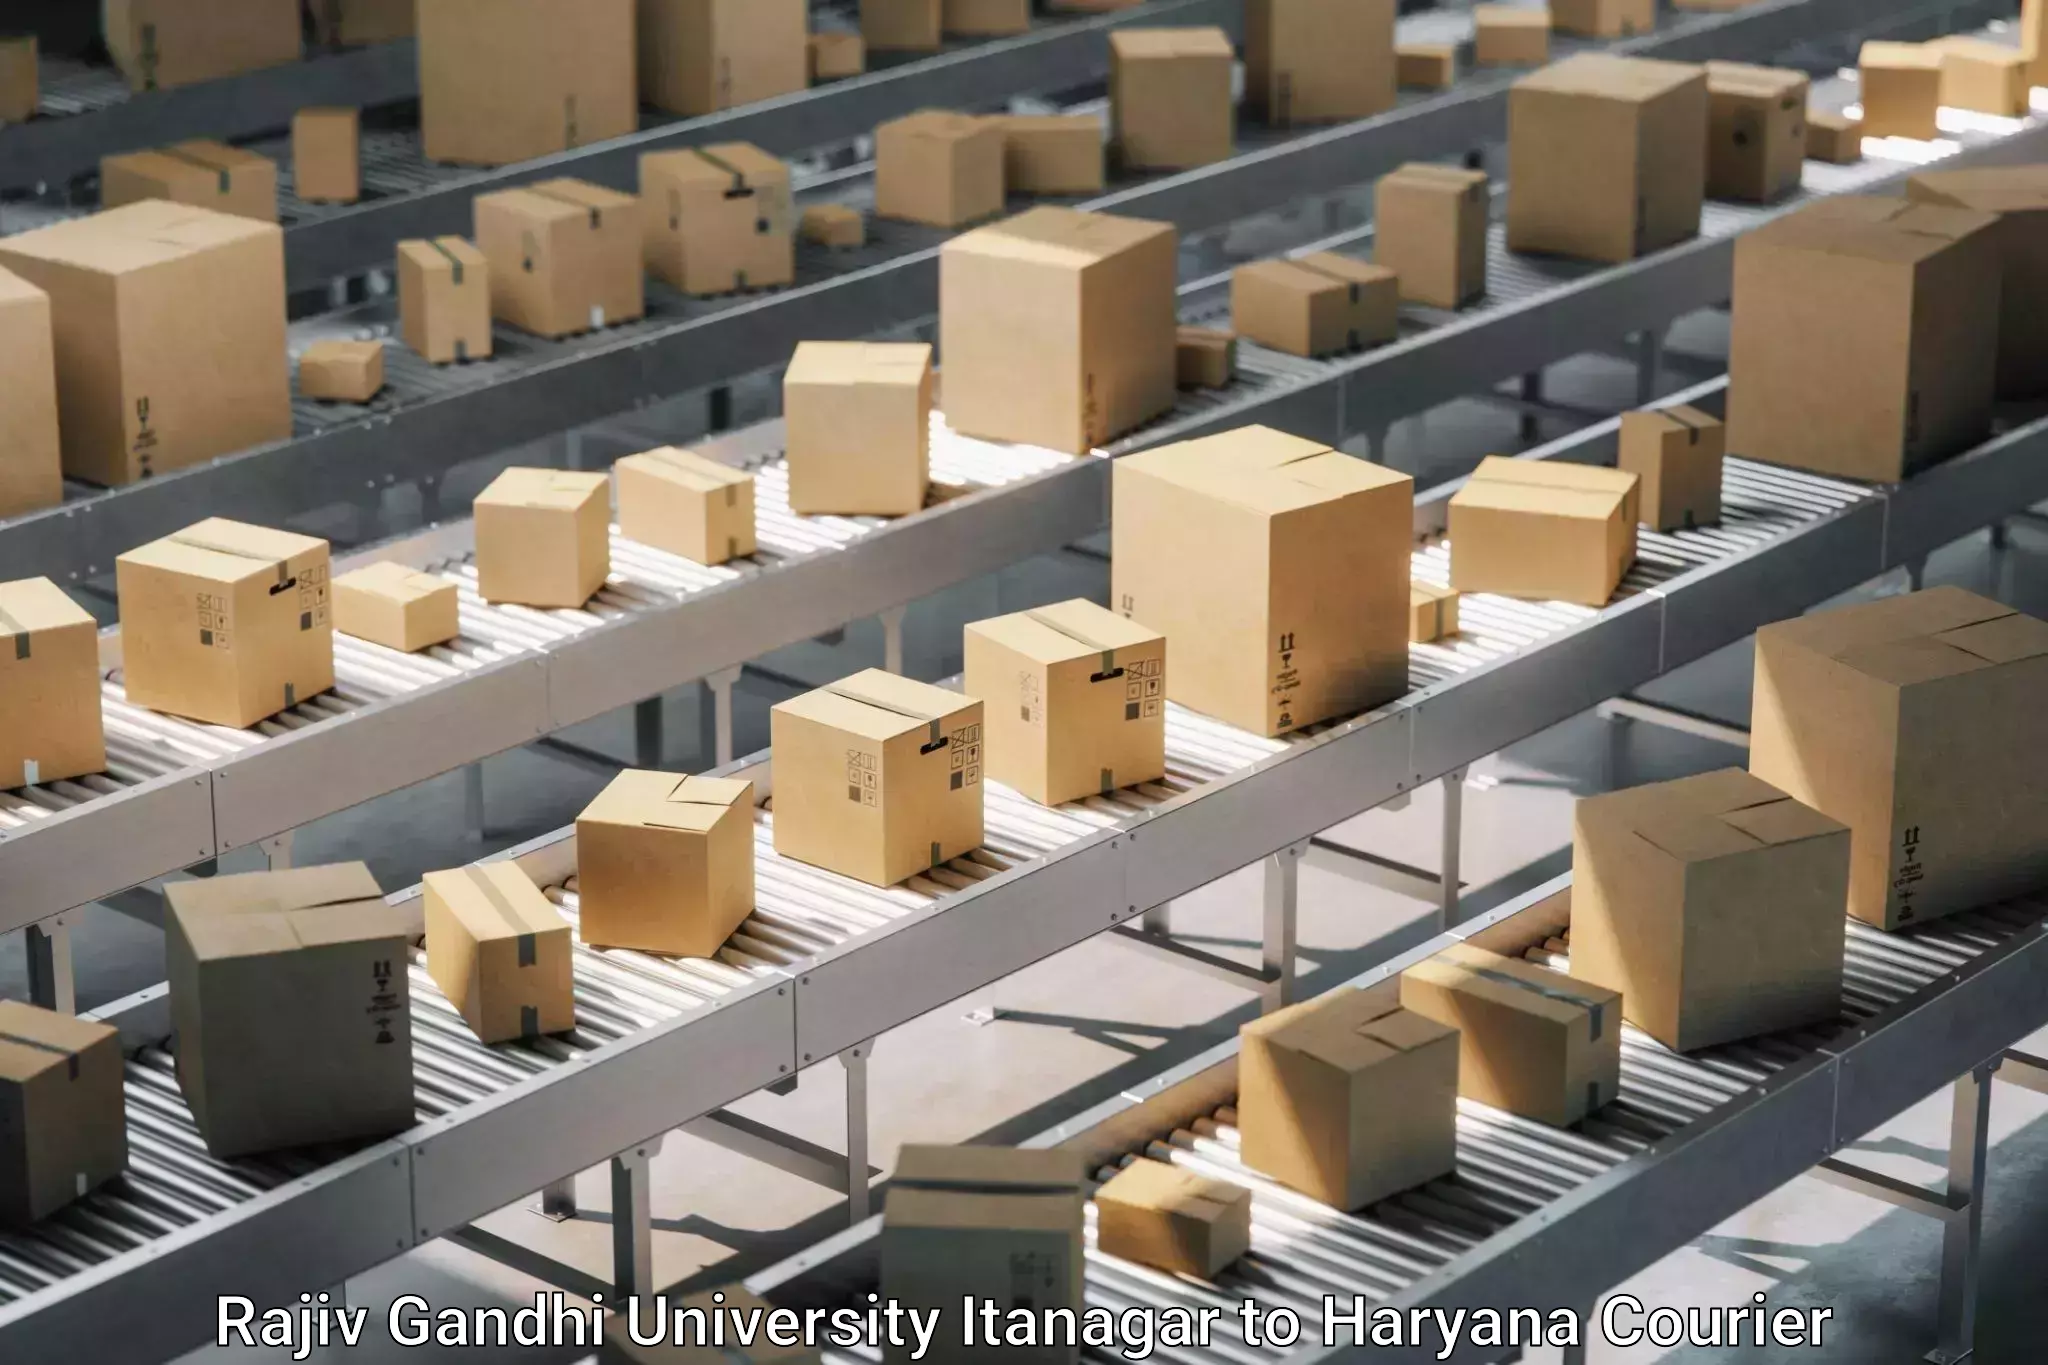 Furniture transport services in Rajiv Gandhi University Itanagar to Bhiwani